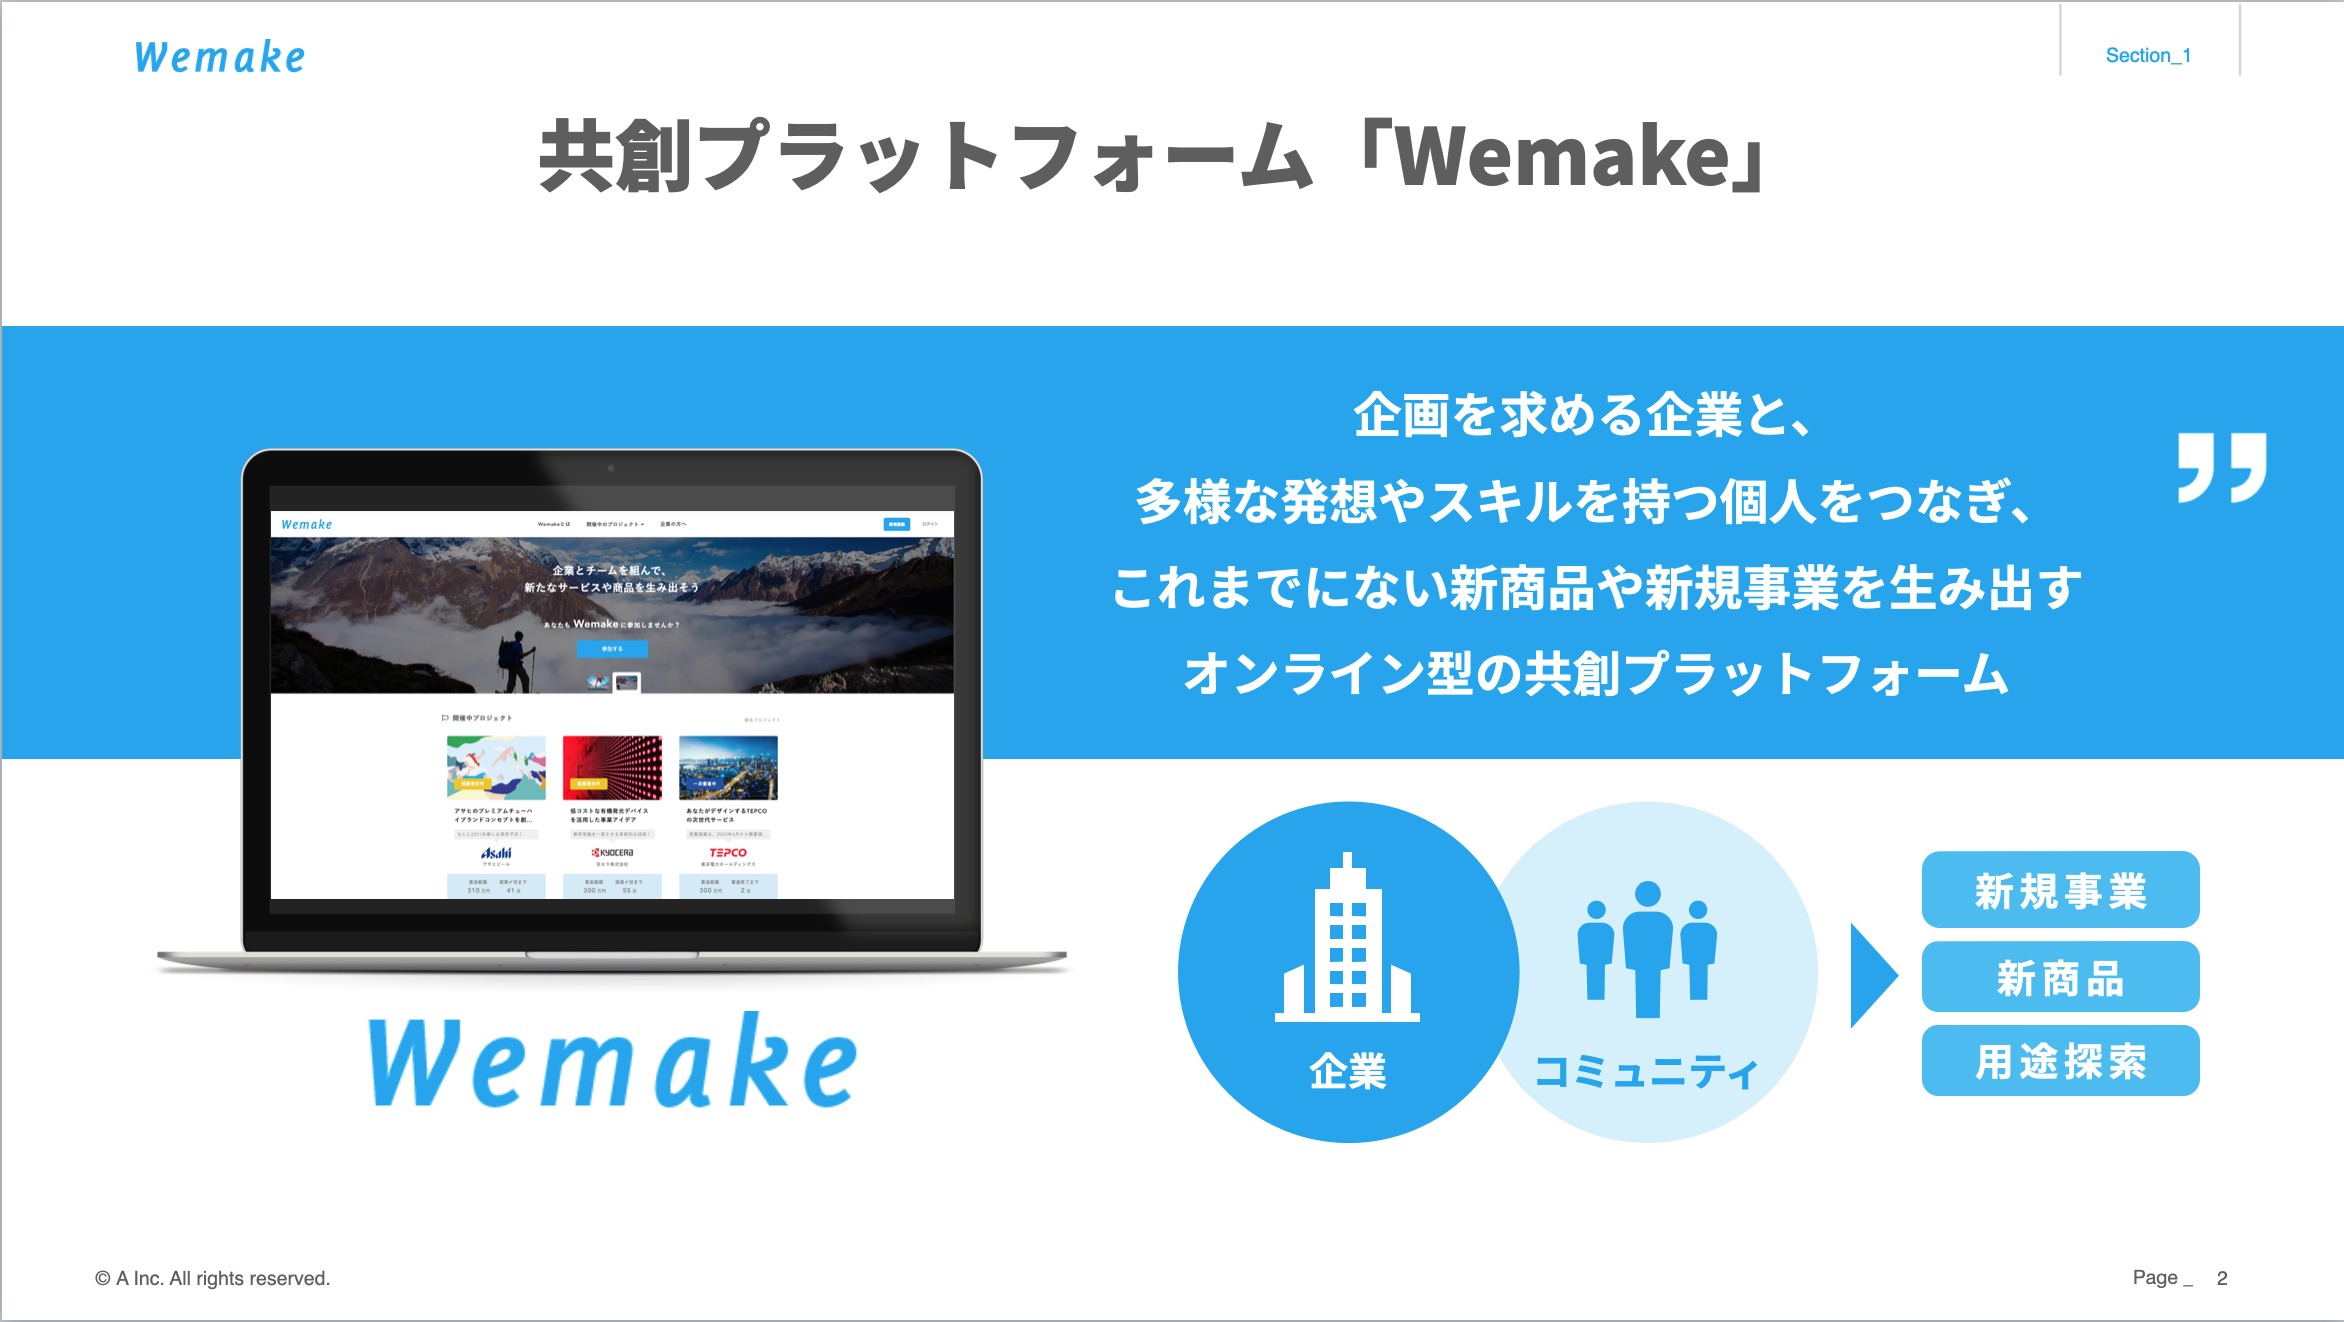 プロフェッショナルな人々と企業が新規事業を生み出していく「Wemake」榎本さんインタビュー